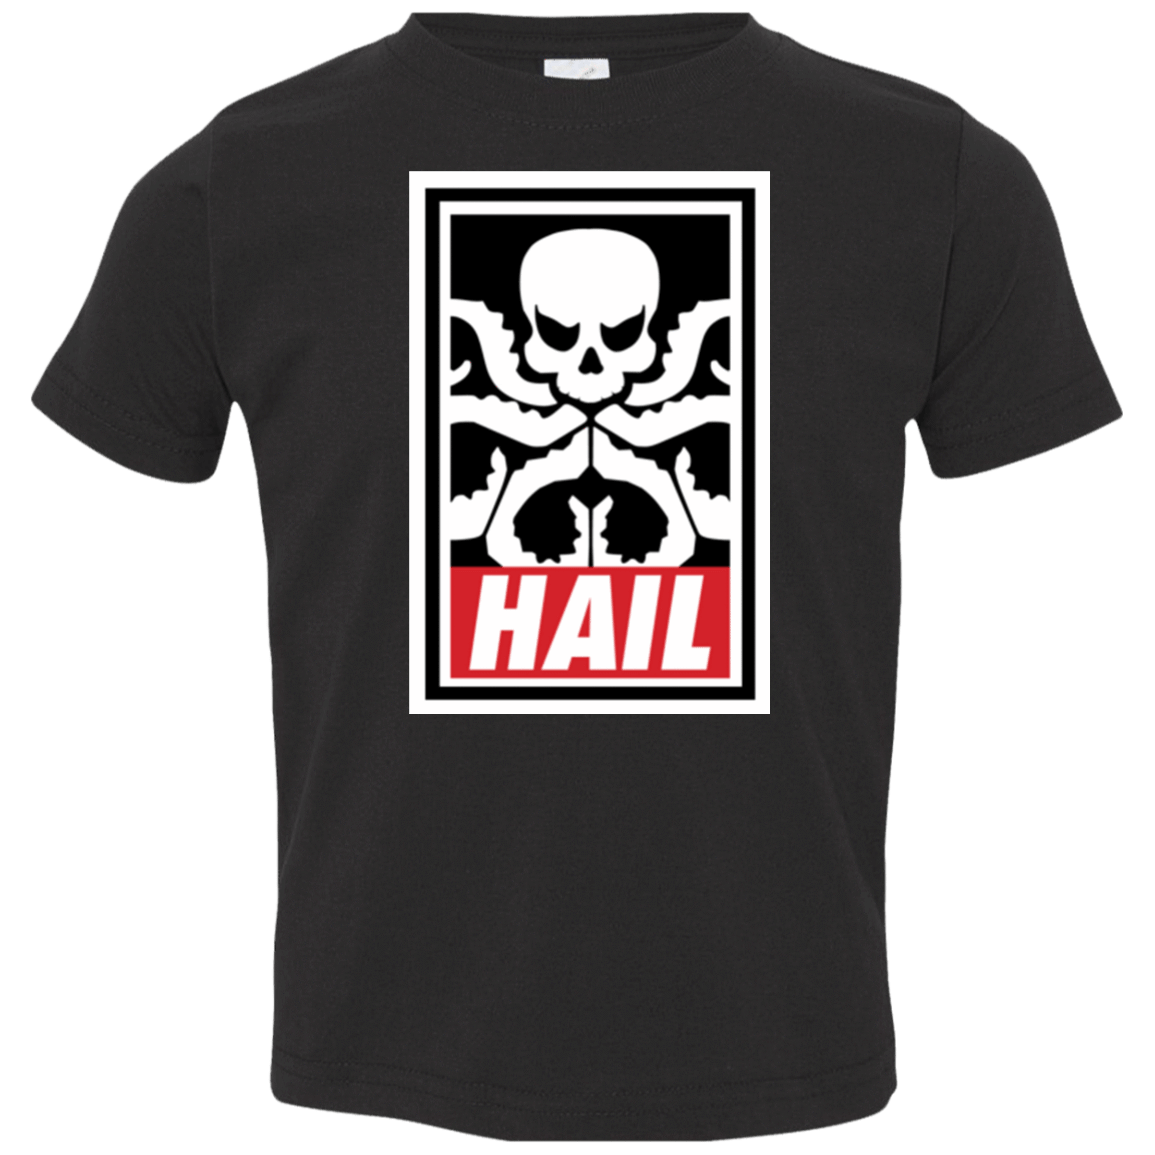 T-Shirts Black / 2T Hail Hydra Toddler Premium T-Shirt